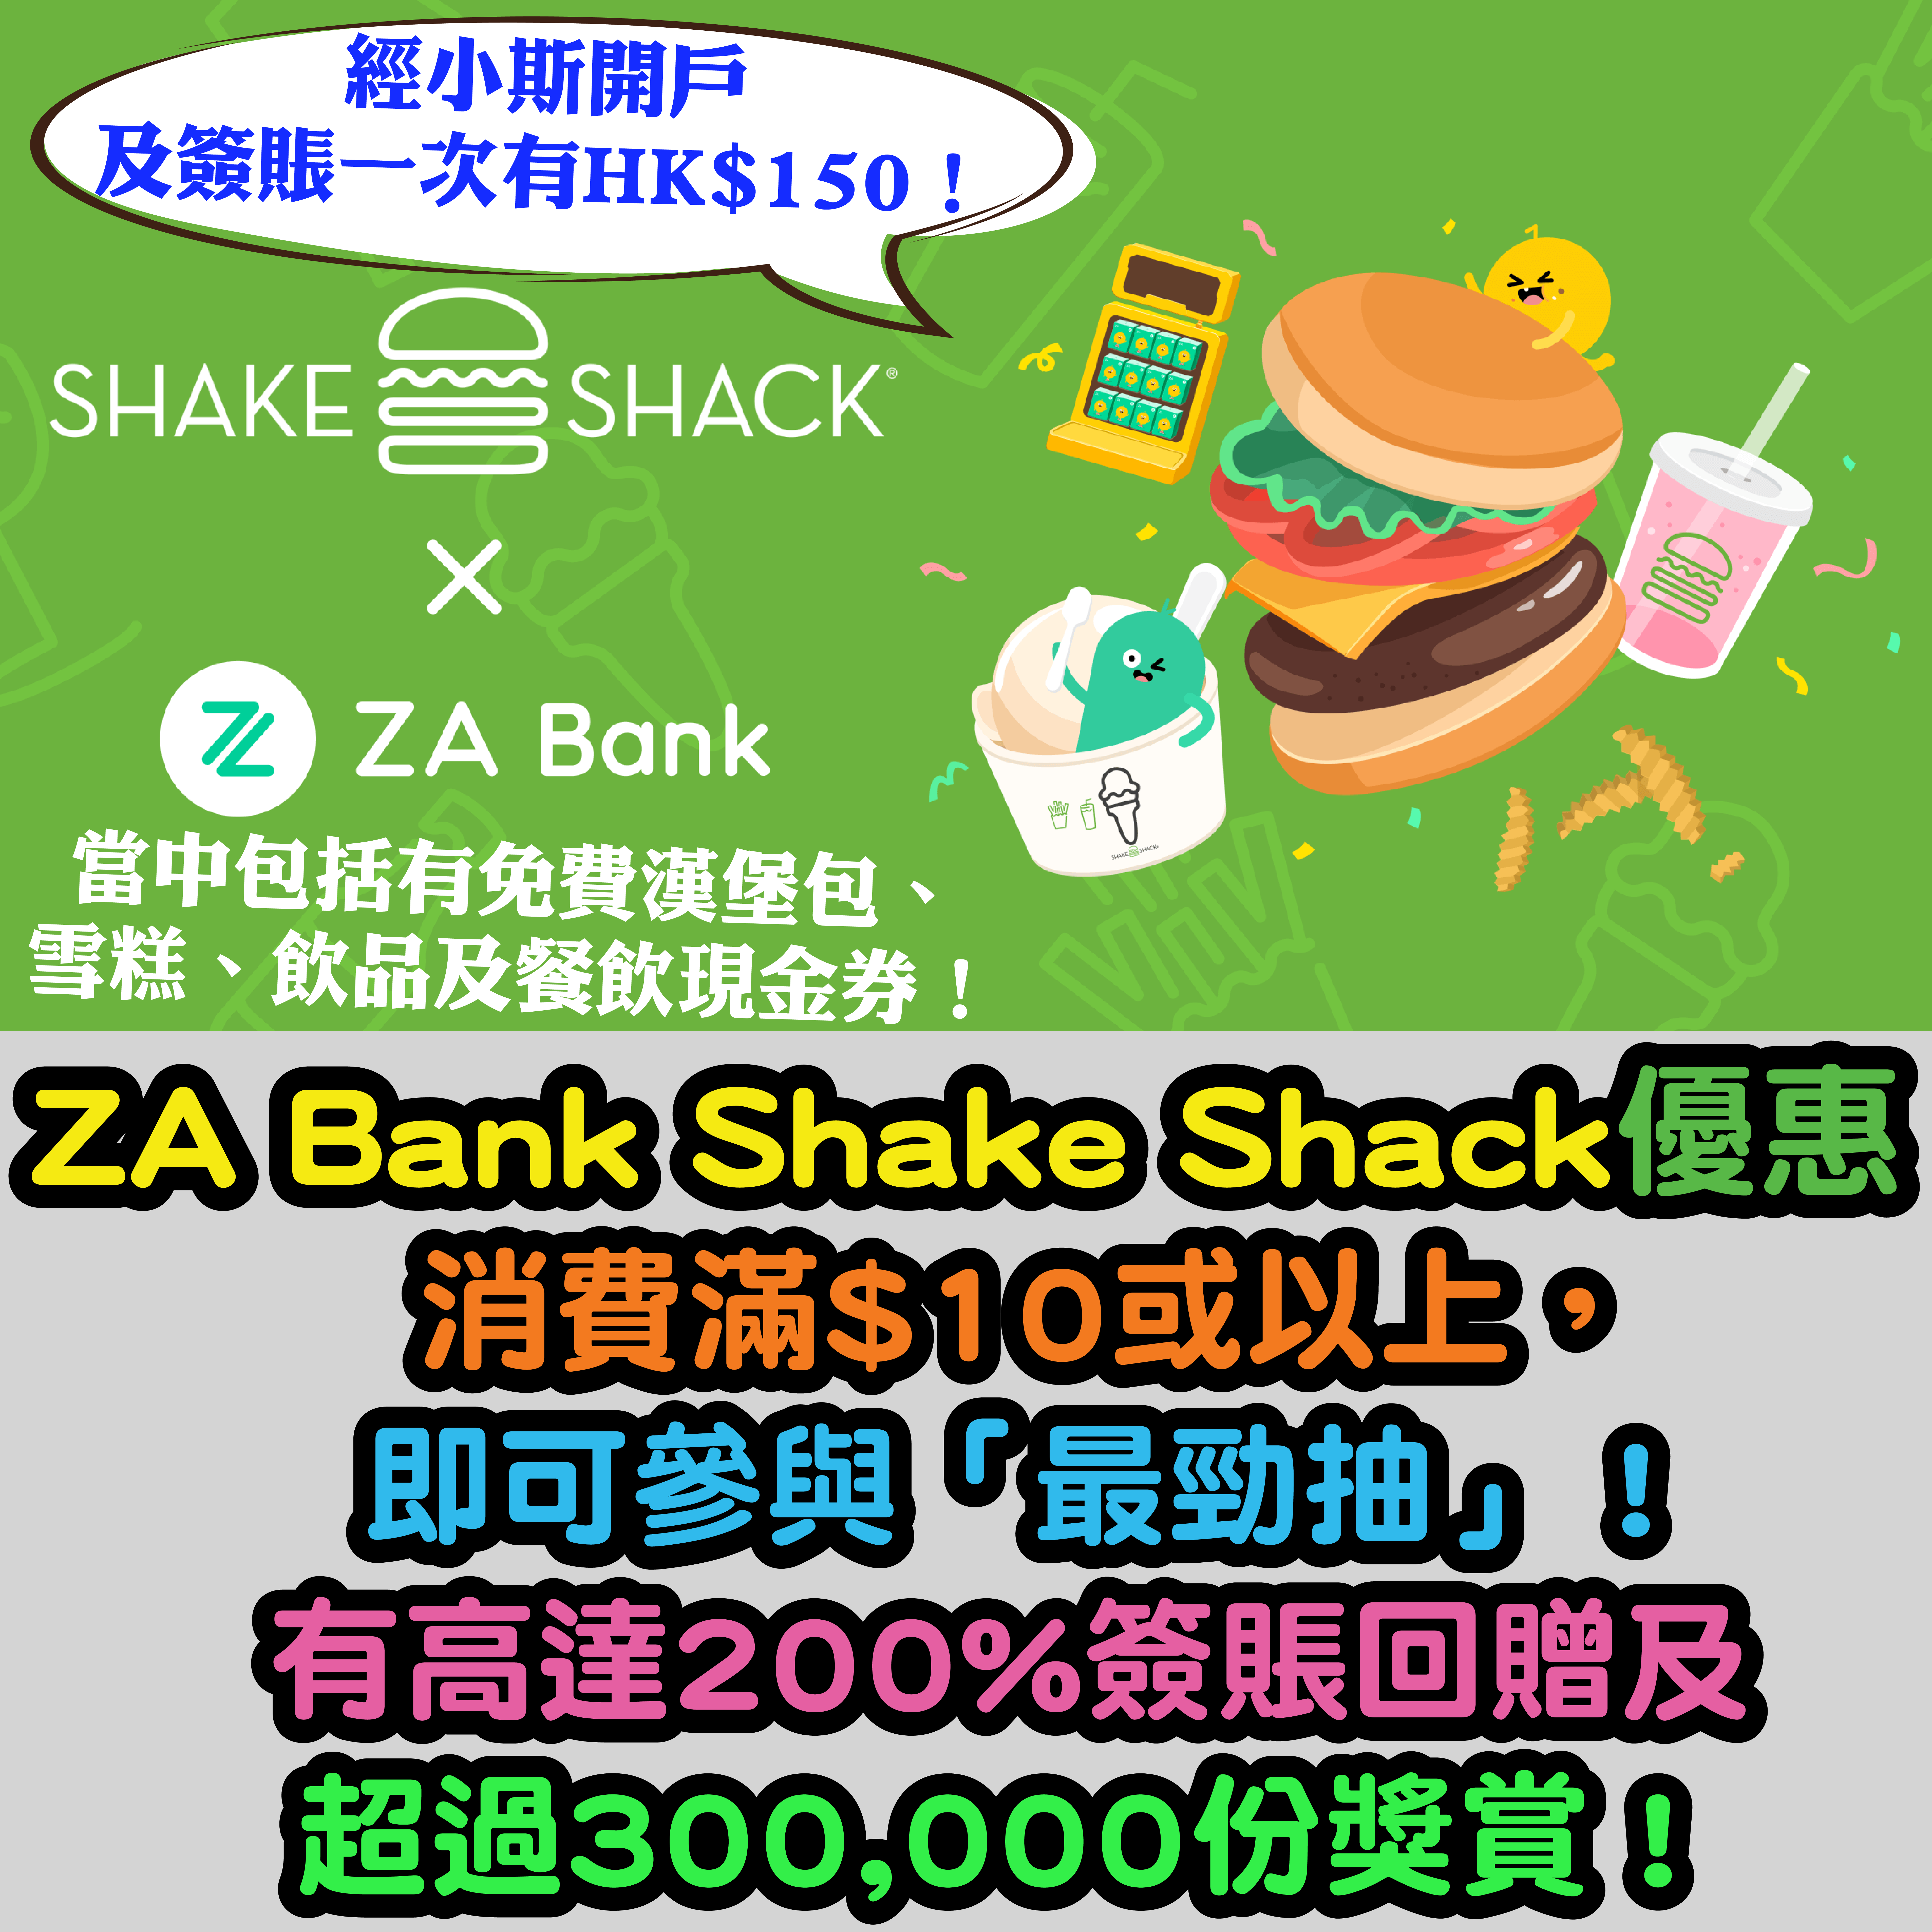 (經小斯開戶及簽賬一次有HK$150！)【ZA Bank Shake Shack優惠】 消費滿$10或以上，即可參與「最勁抽」！有高達200%簽賬回贈及超過300,000份獎賞！當中包括有免費漢堡包、雪糕、飲品及餐飲現金券！